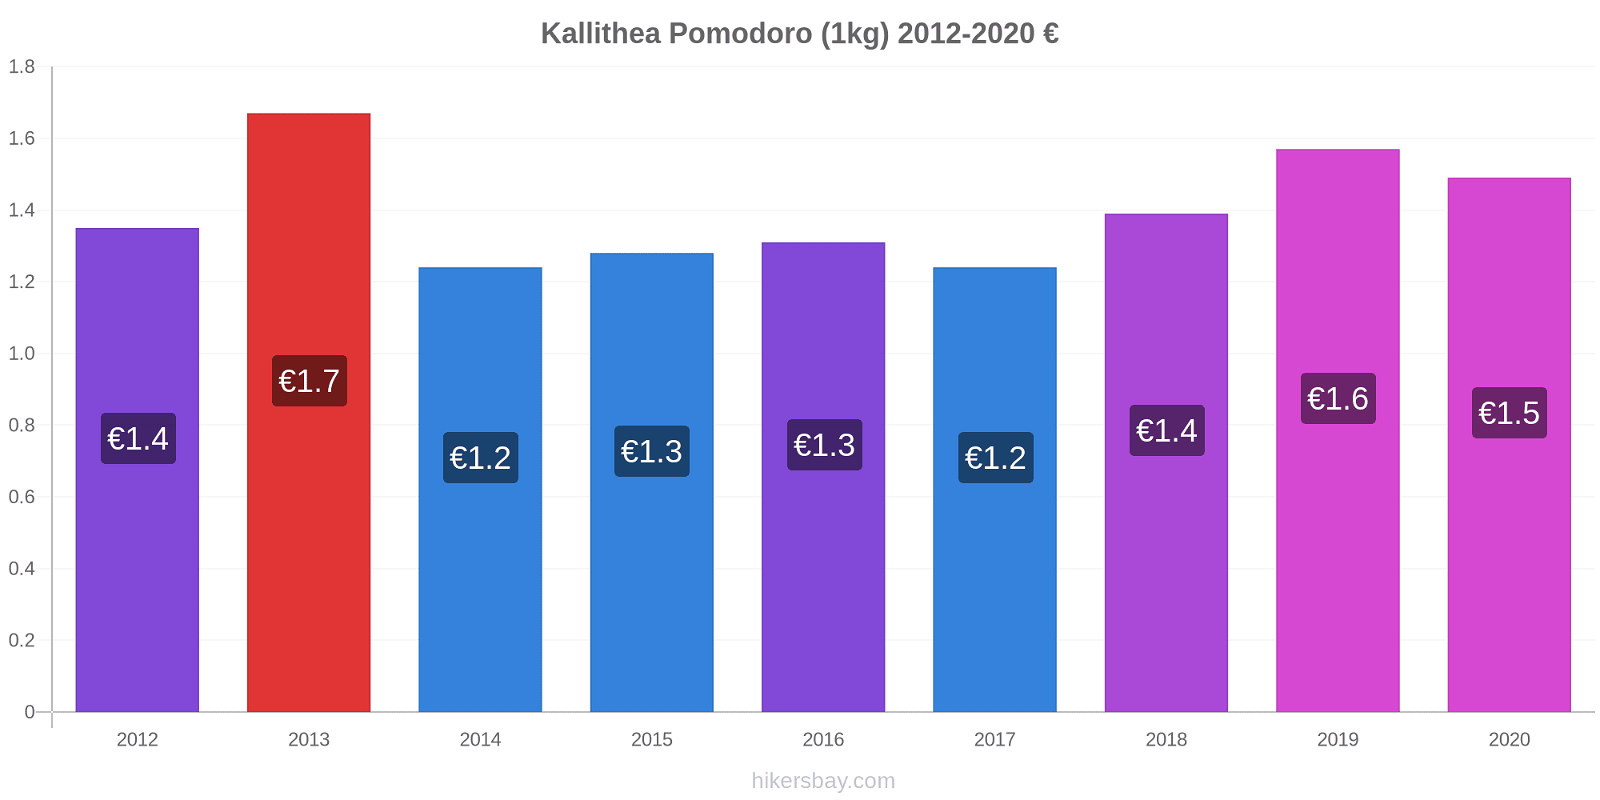 Kallithea variazioni di prezzo Pomodoro (1kg) hikersbay.com